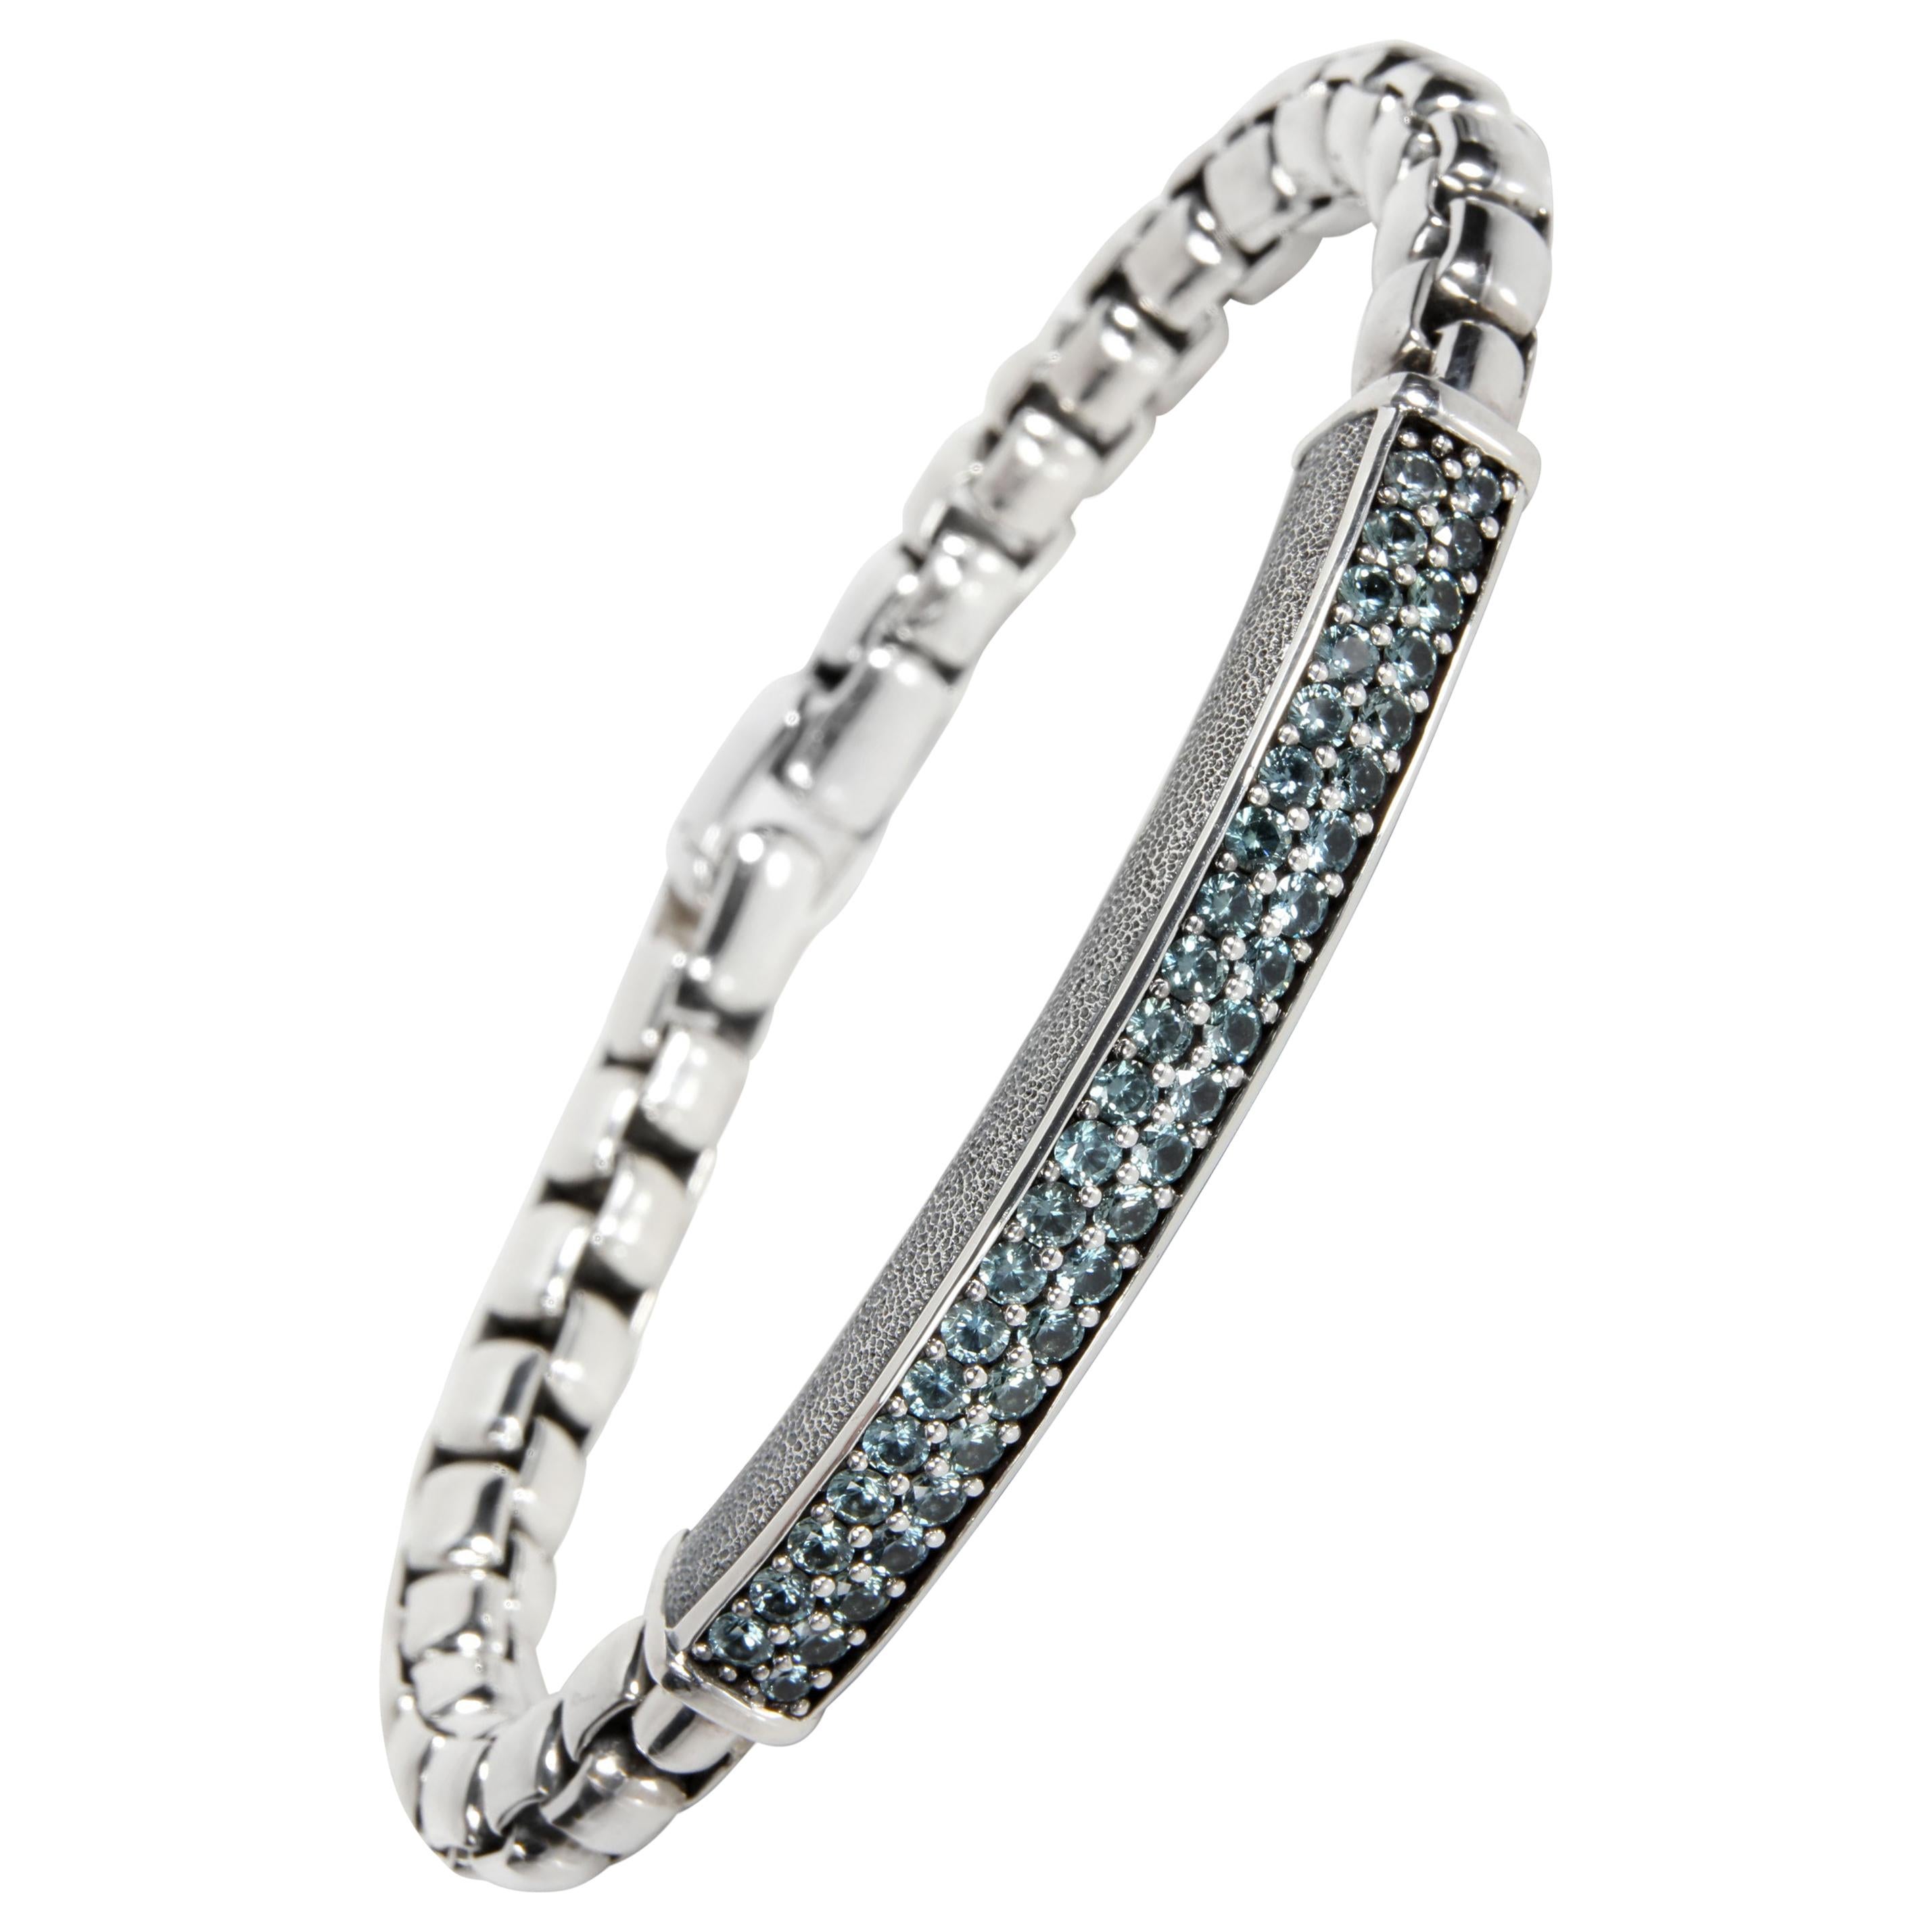 David Yurman Streamline Sapphire Bracelet in Sterling Silver